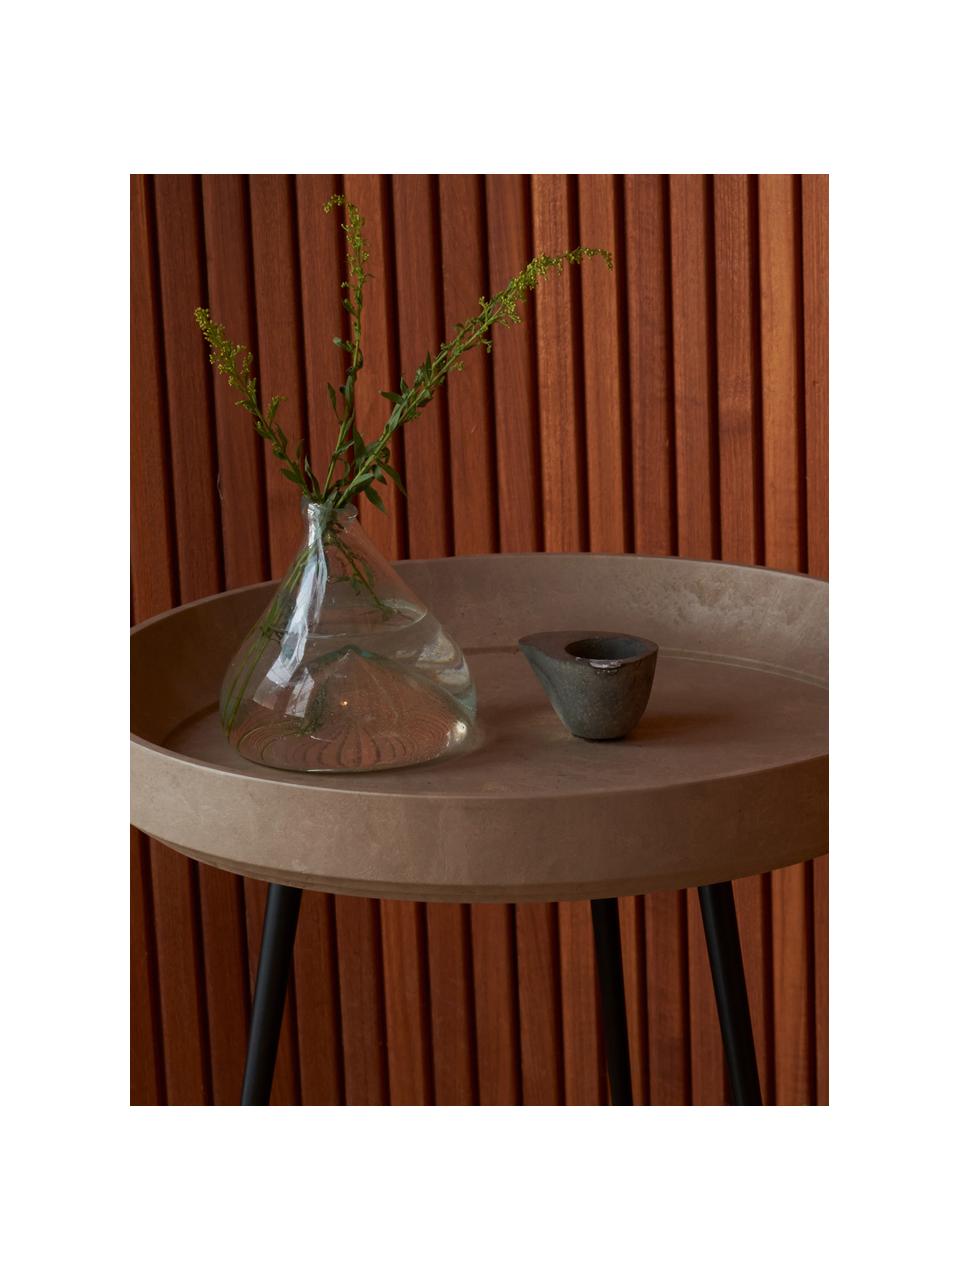 Runder Beistelltisch Bowl aus Eichenholz, handgefertigt, Tischplatte: Eichenholz, lackiert, Eichenholz, beige lackiert, Ø 46 x H 55 cm